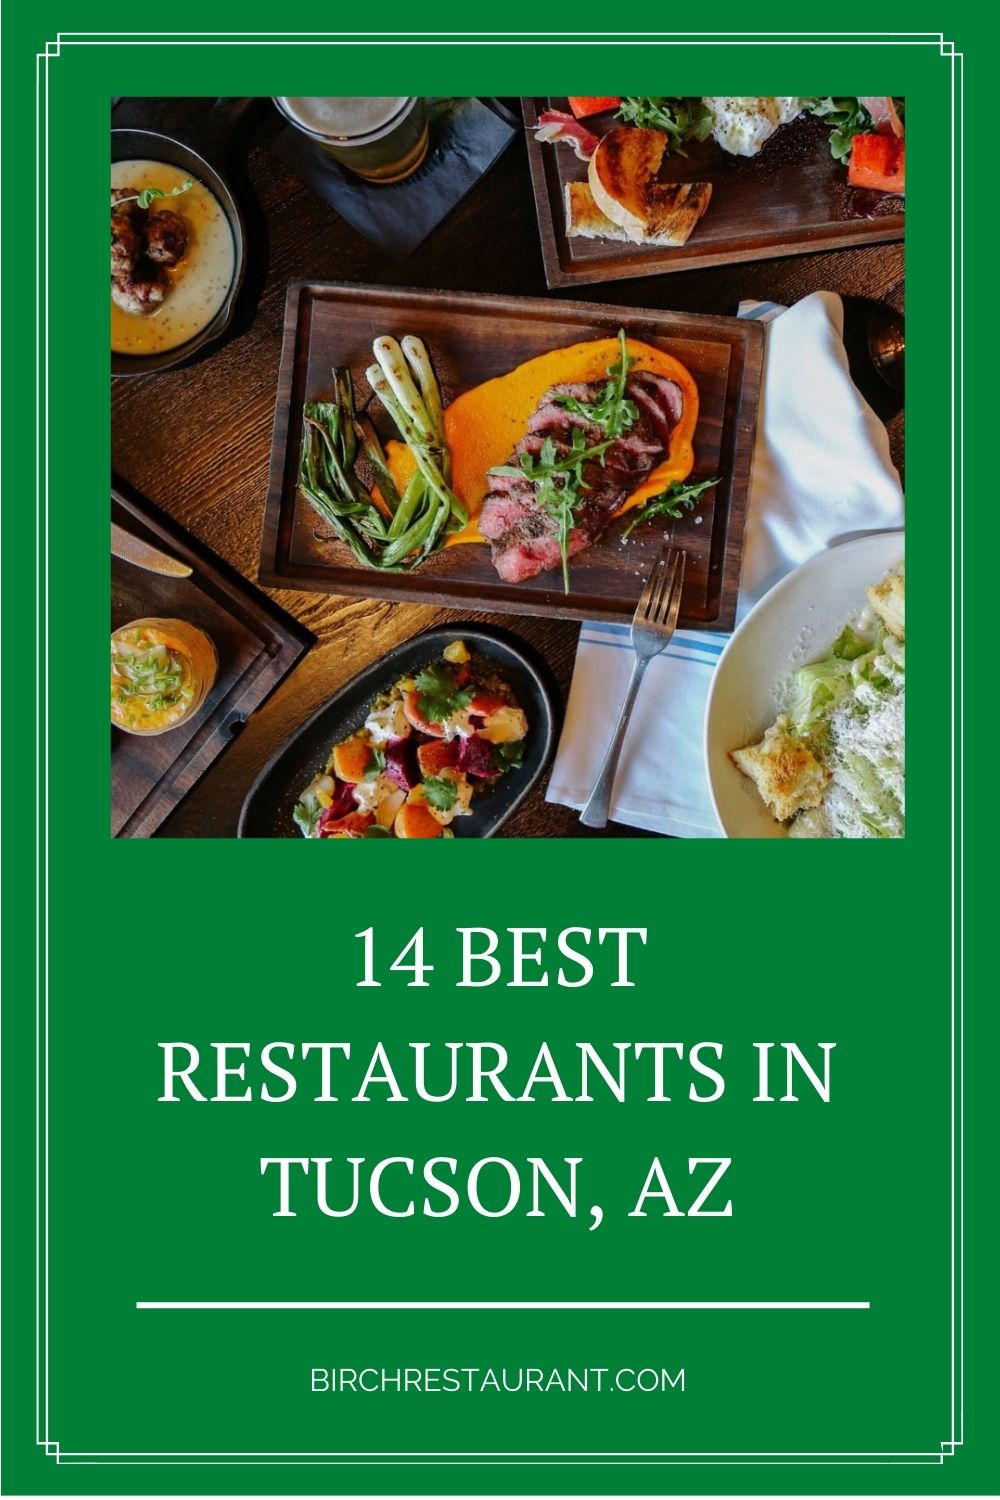 Best Restaurants in Tucson